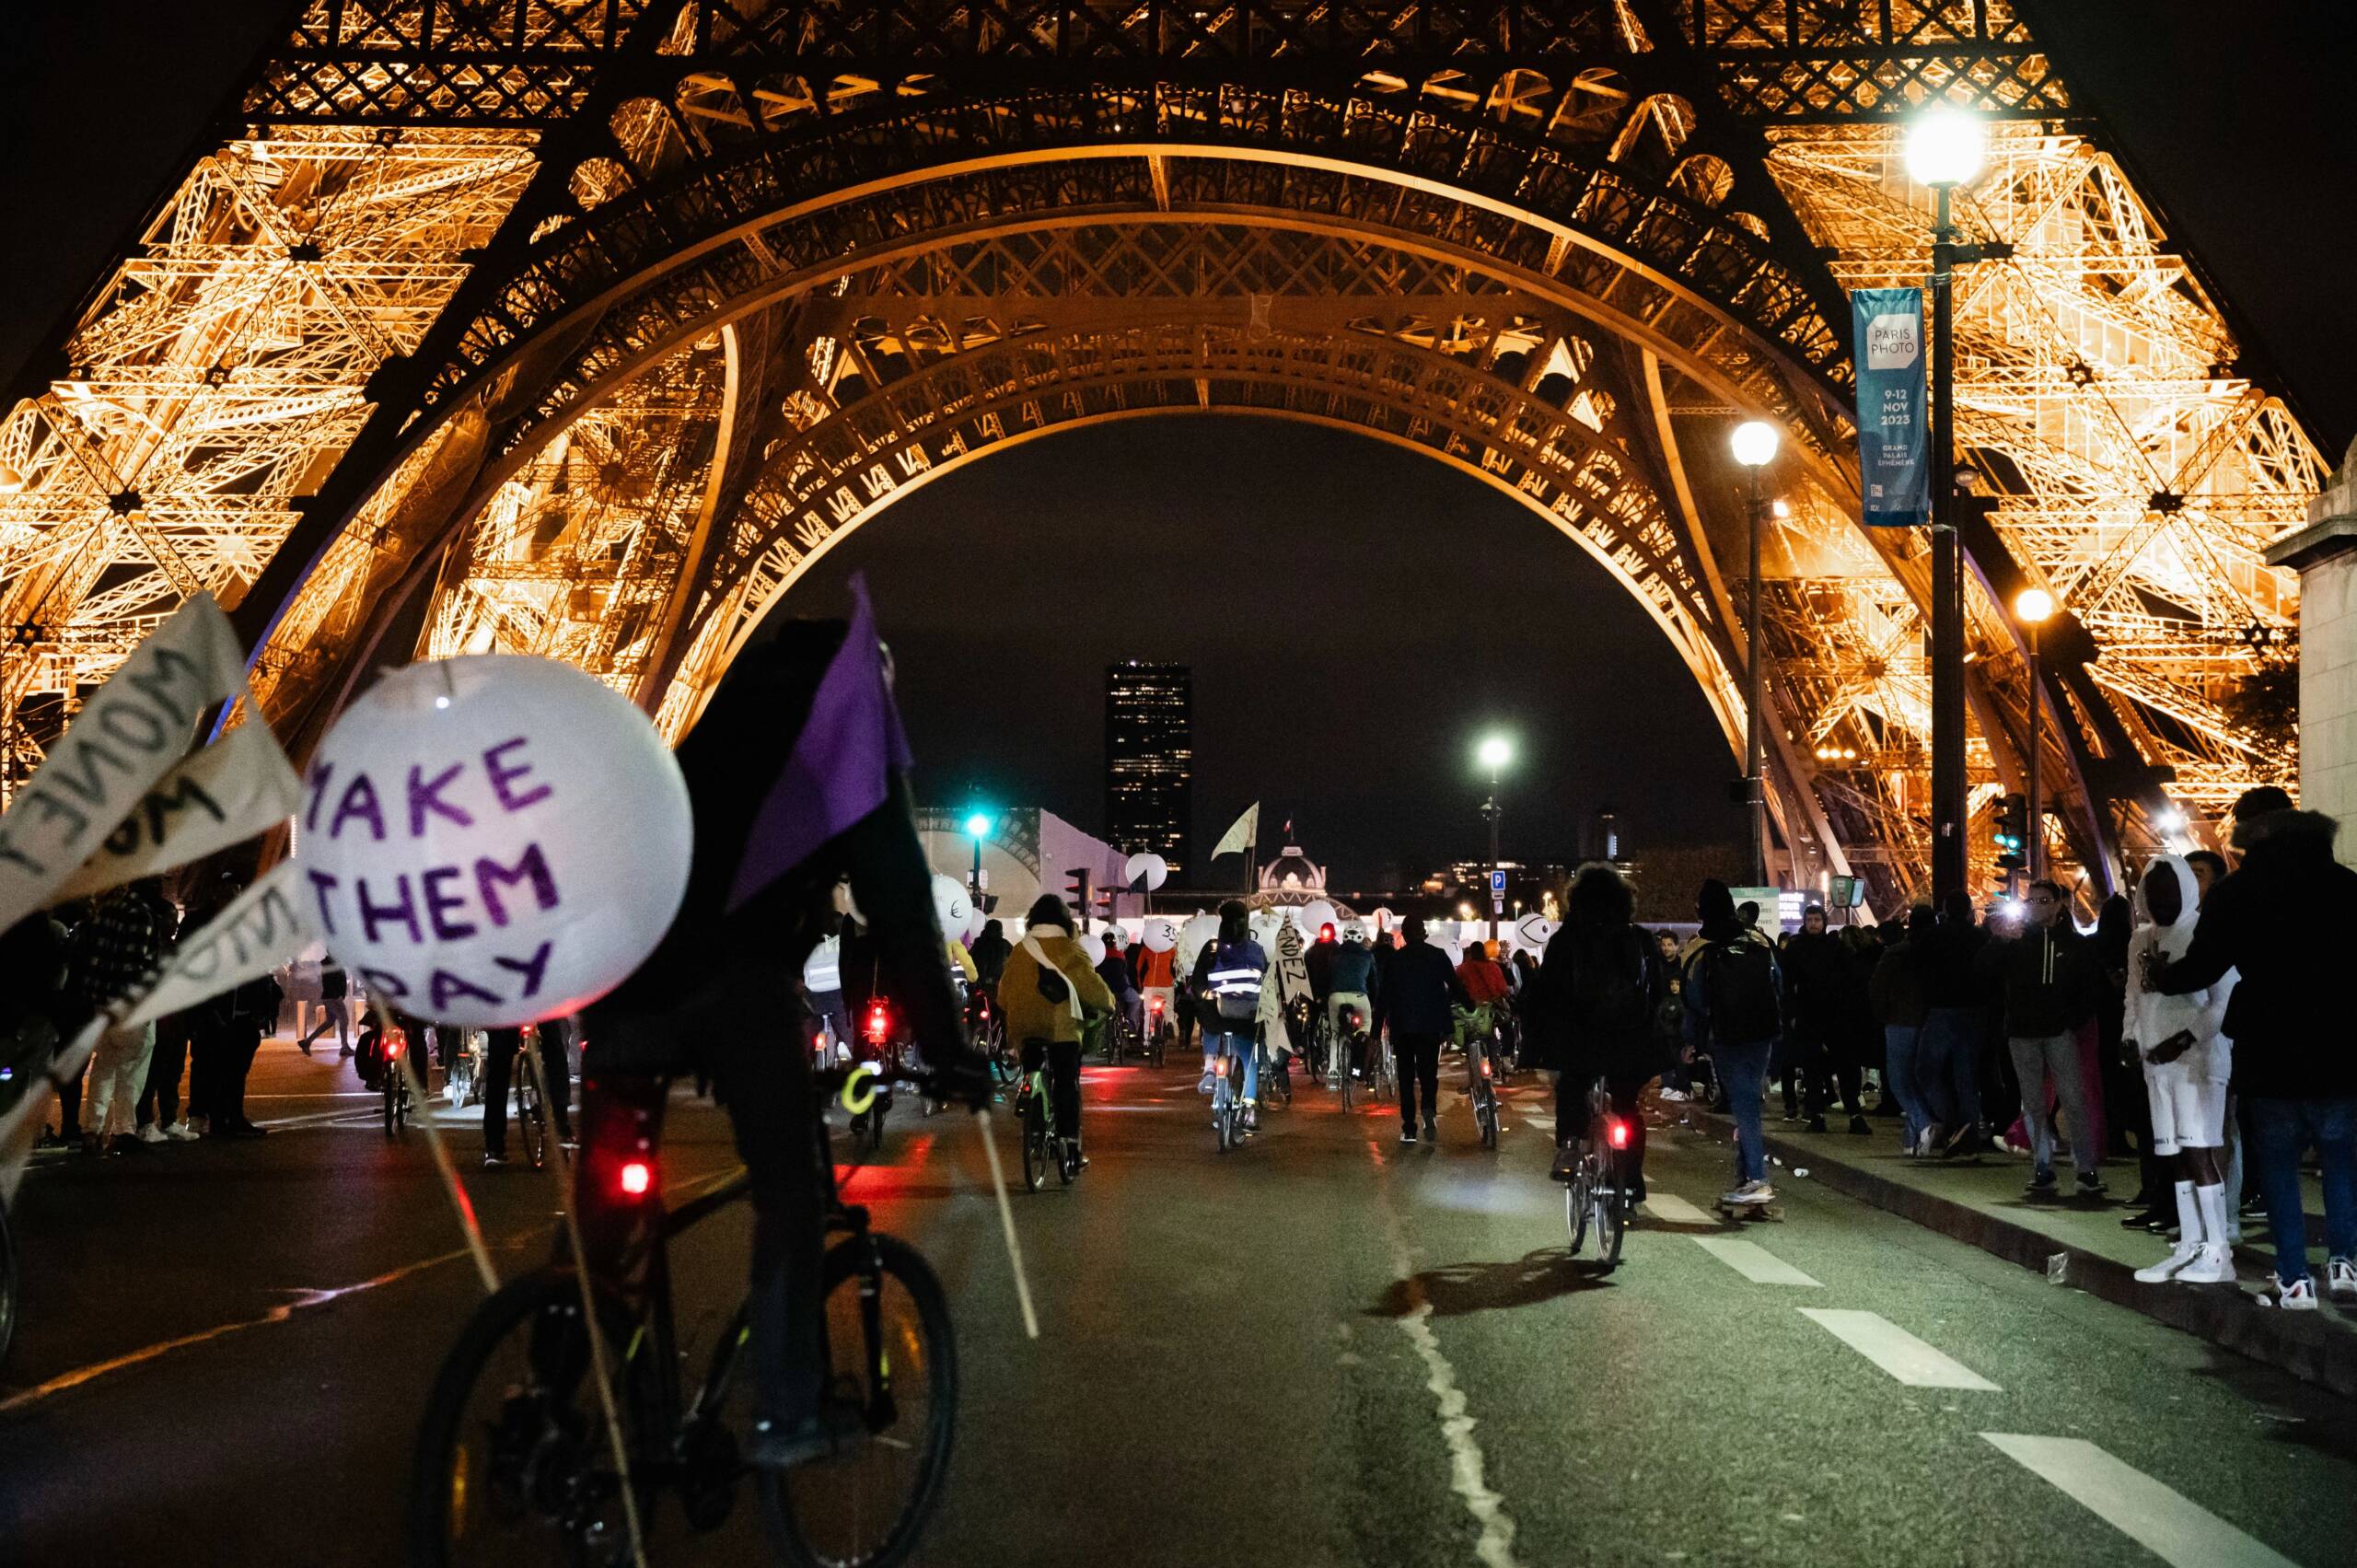 Paris, France, le 3 novembre : des groupes pour la justice climatique ont organisé un défilé lumineux depuis les sièges sociaux des plus grands pollueurs, comme Total, jusqu’à l’Assemblée nationale. Ils réclament au gouvernement de taxer les pollueurs. Crédit photo : Claire Jaillard